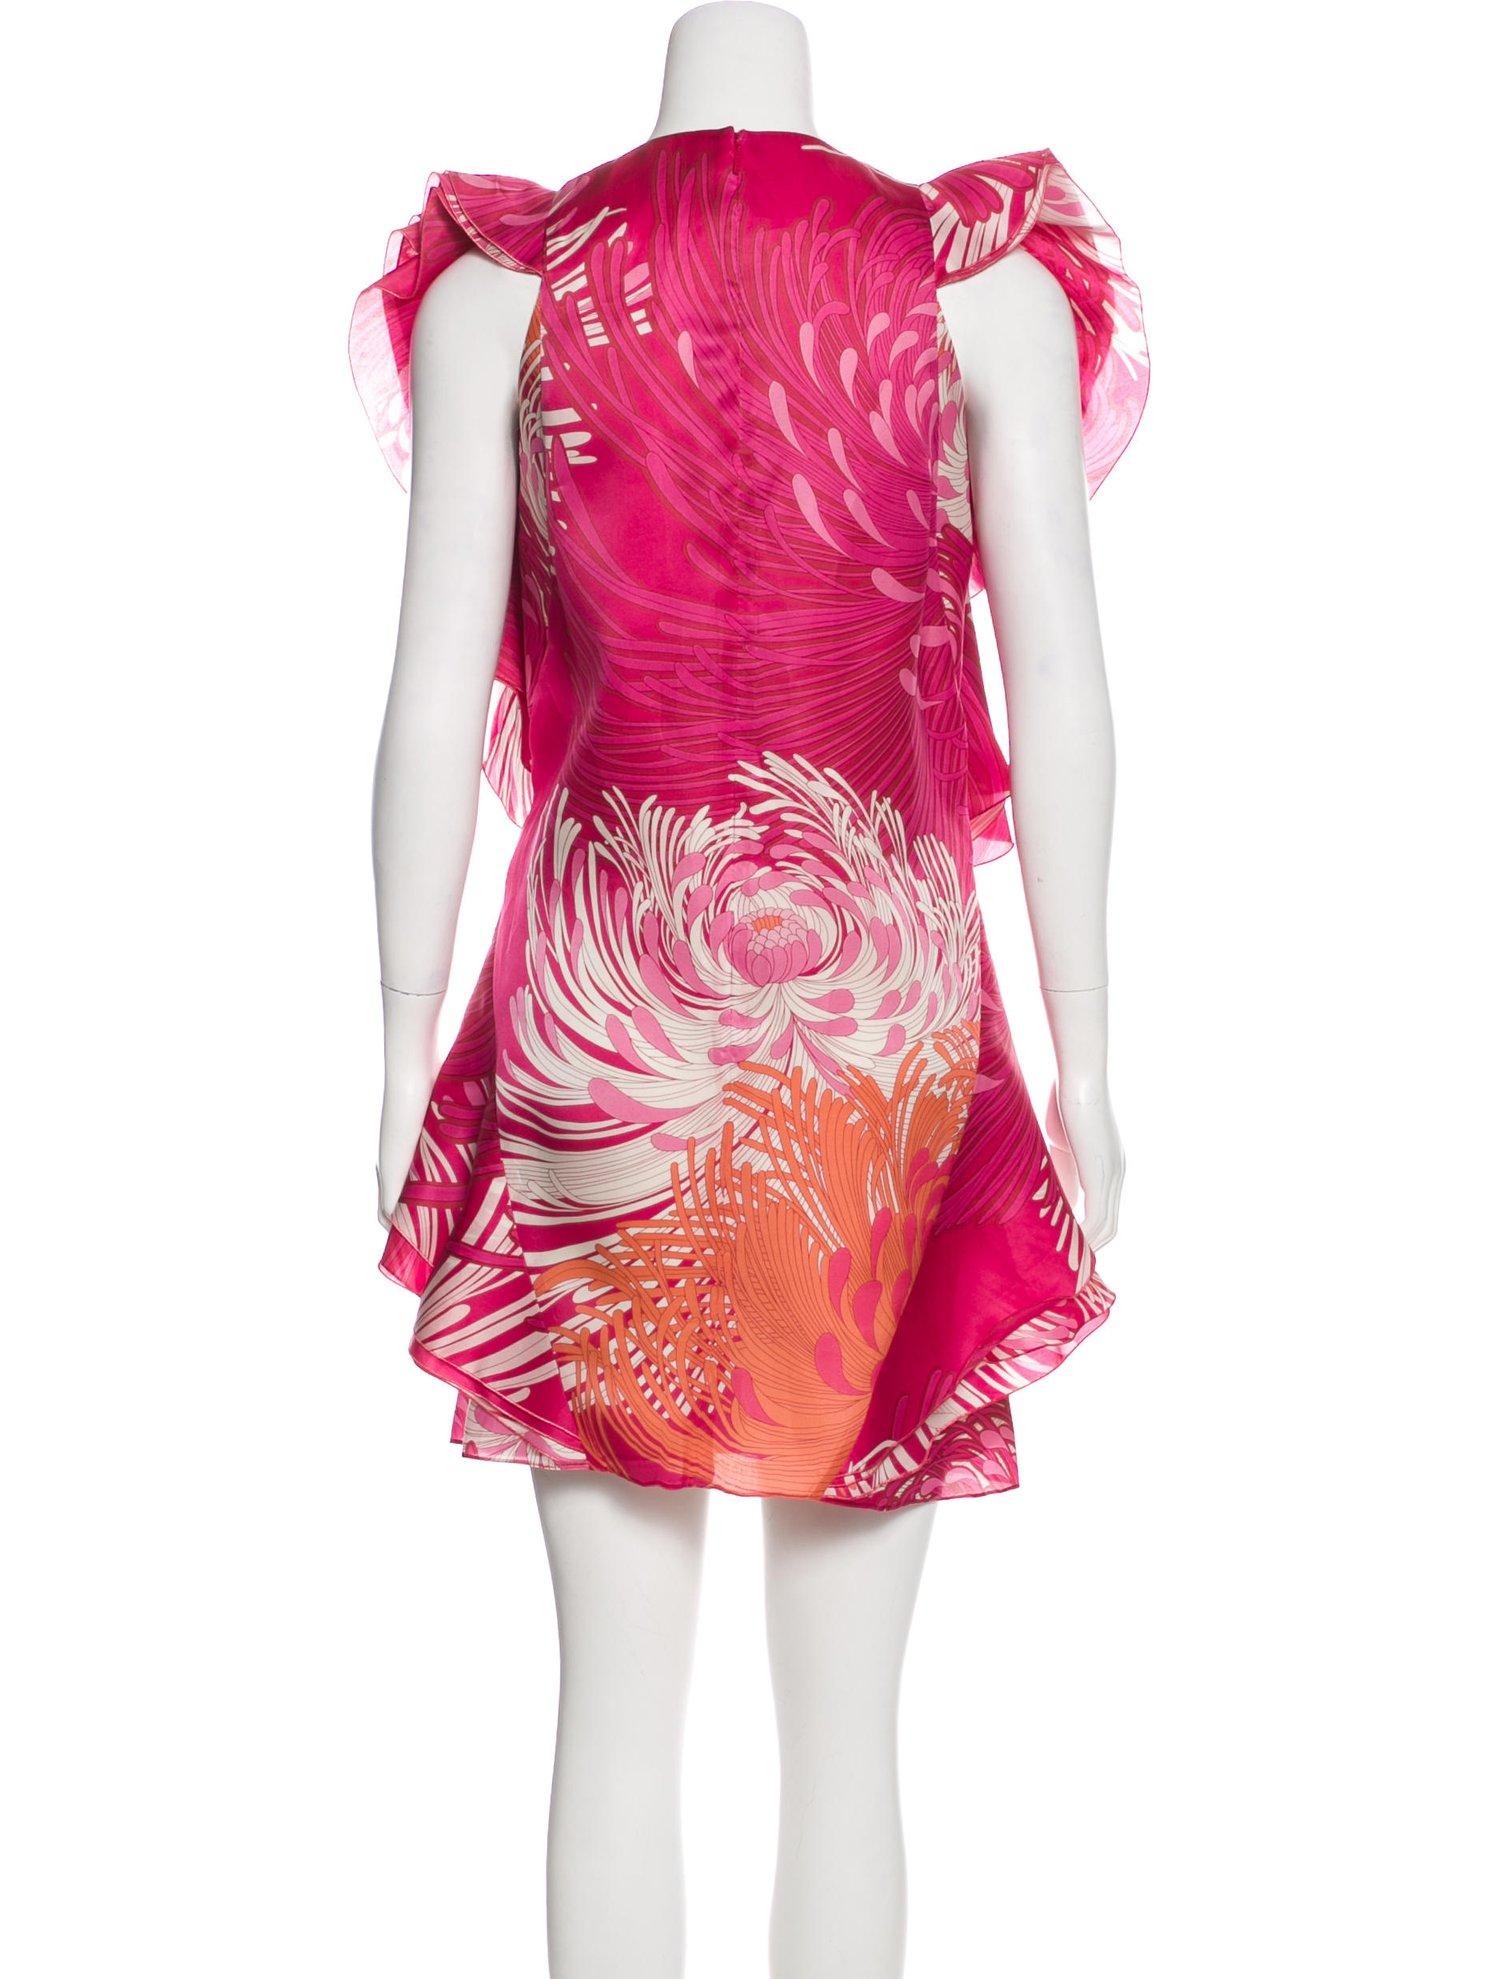 New Rare Gucci Runway Ad Silk Dress S/S 2013 Sz 40 $3499 9